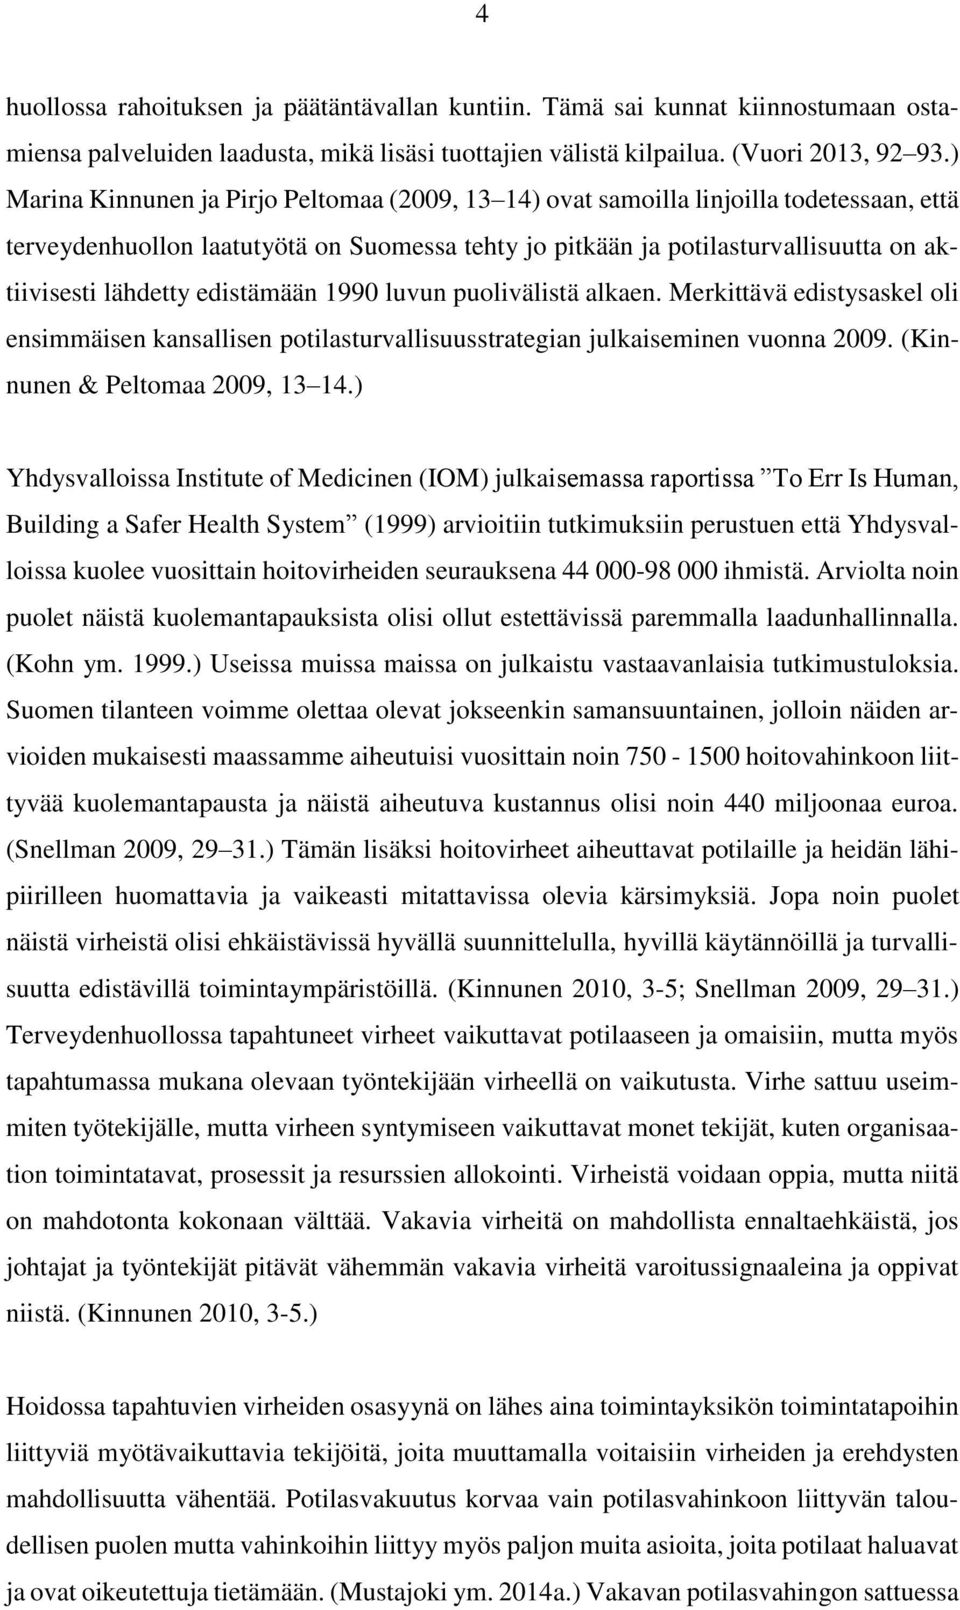 edistämään 1990 luvun puolivälistä alkaen. Merkittävä edistysaskel oli ensimmäisen kansallisen potilasturvallisuusstrategian julkaiseminen vuonna 2009. (Kinnunen & Peltomaa 2009, 13 14.